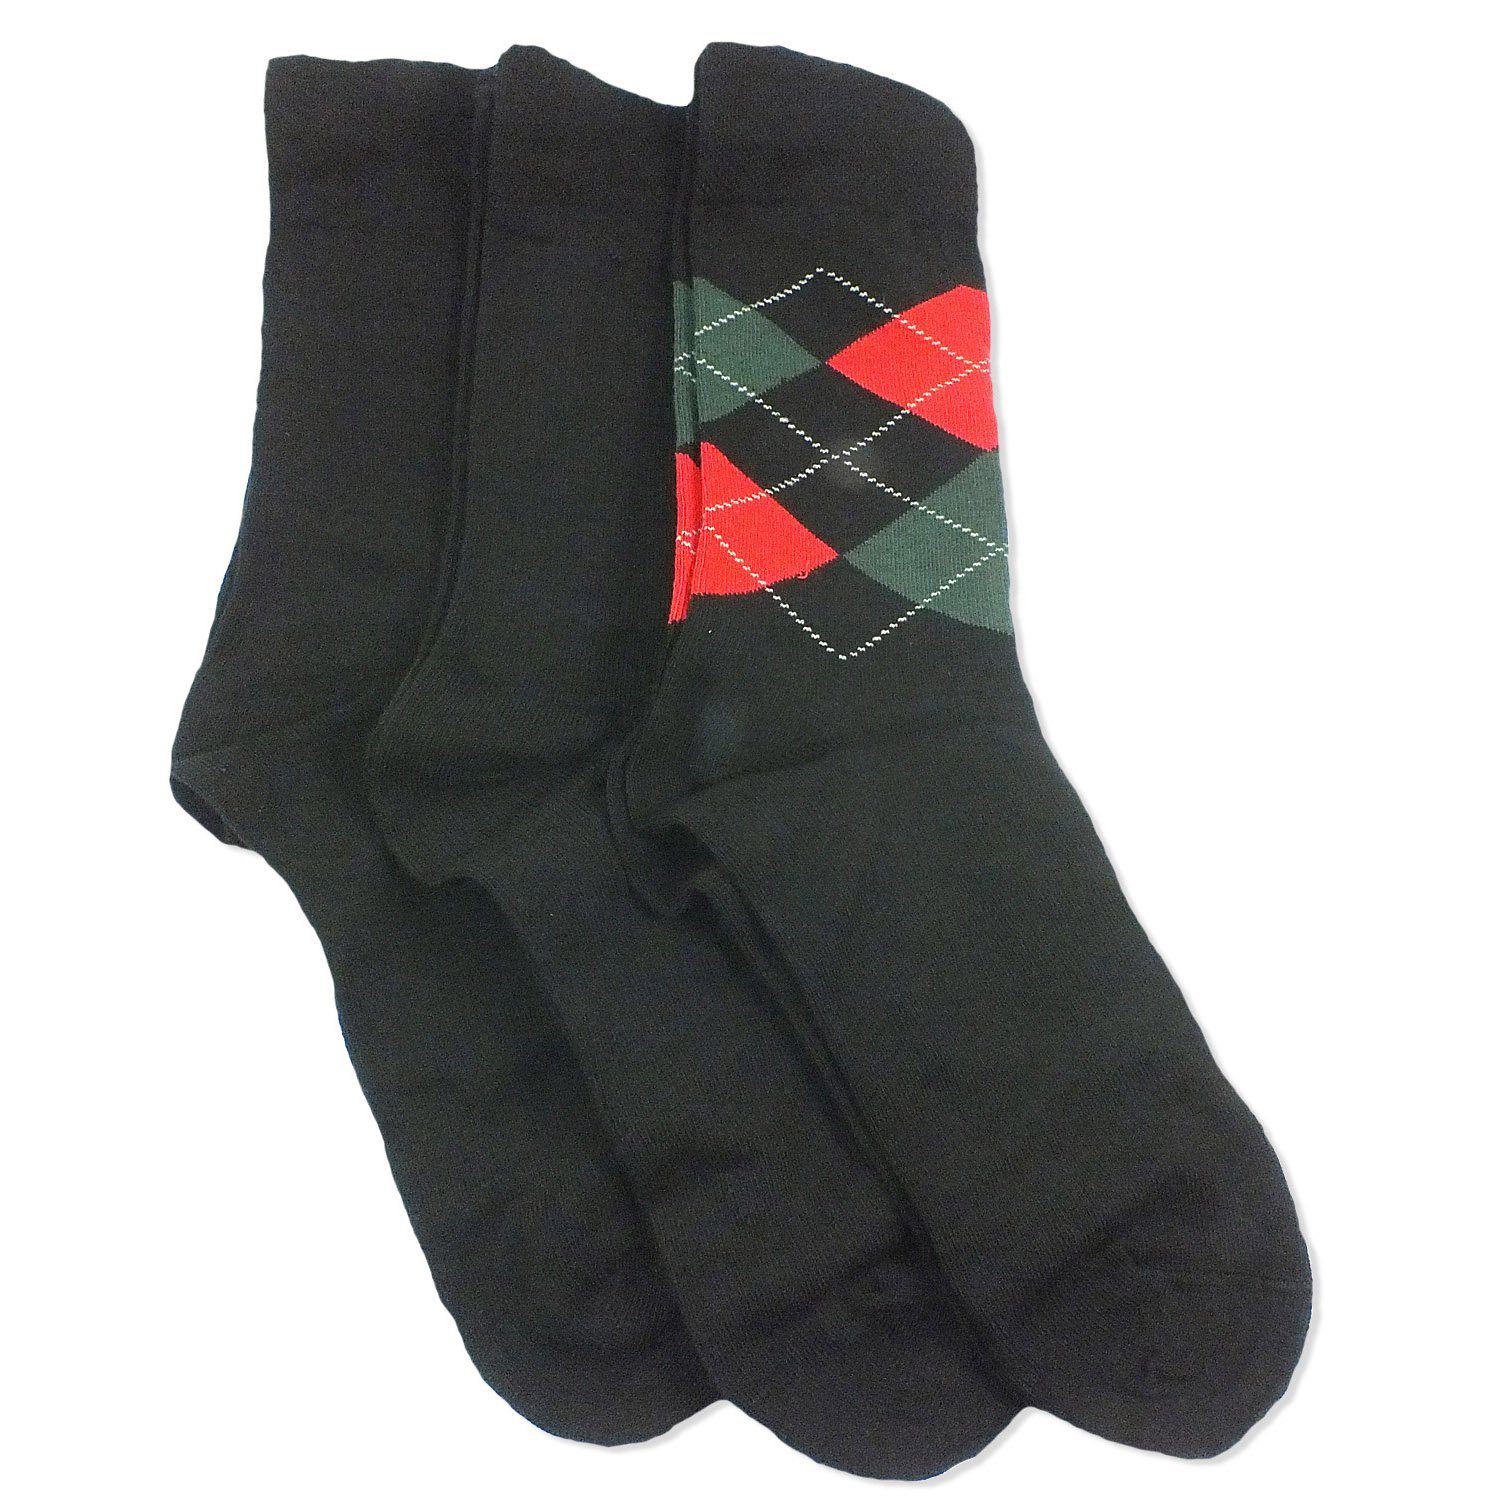 Camano Langsocken CA4903 (Packung, 3-Paar, 3 Paar) Herren Damen Unisex Business Socken Baumwolle Geschenkverpackung 05 black